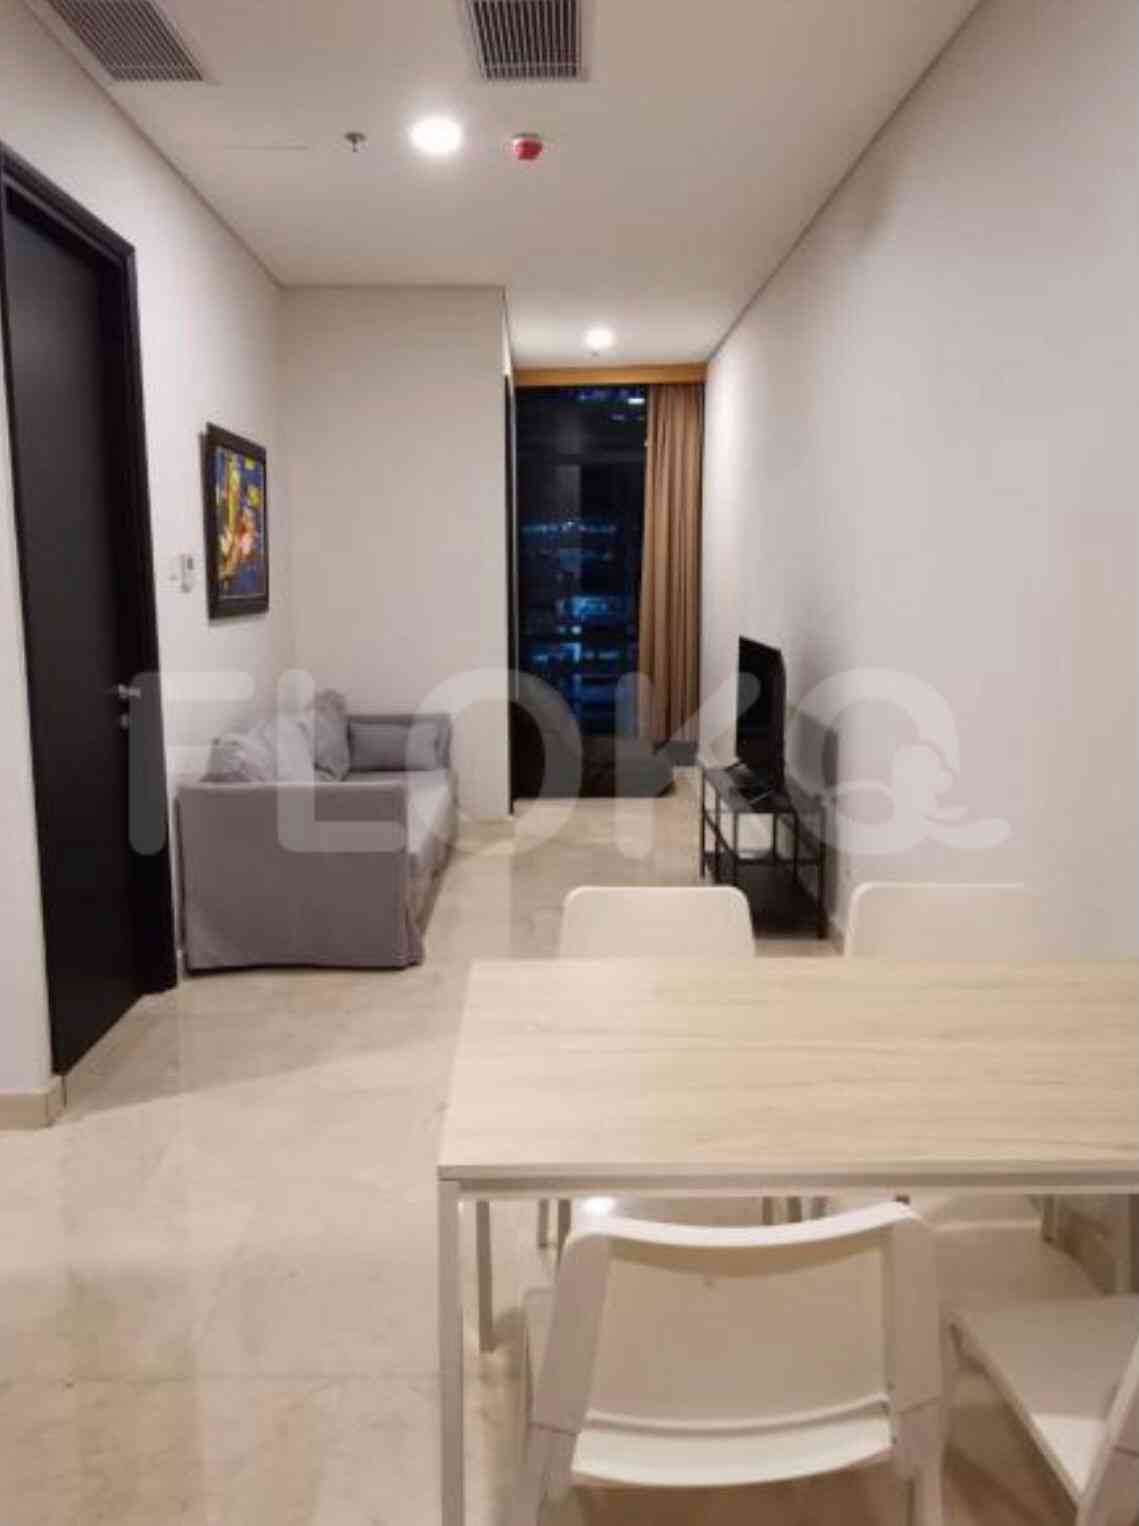 3 Bedroom on 15th Floor for Rent in Sudirman Suites Jakarta - fsu6d4 2